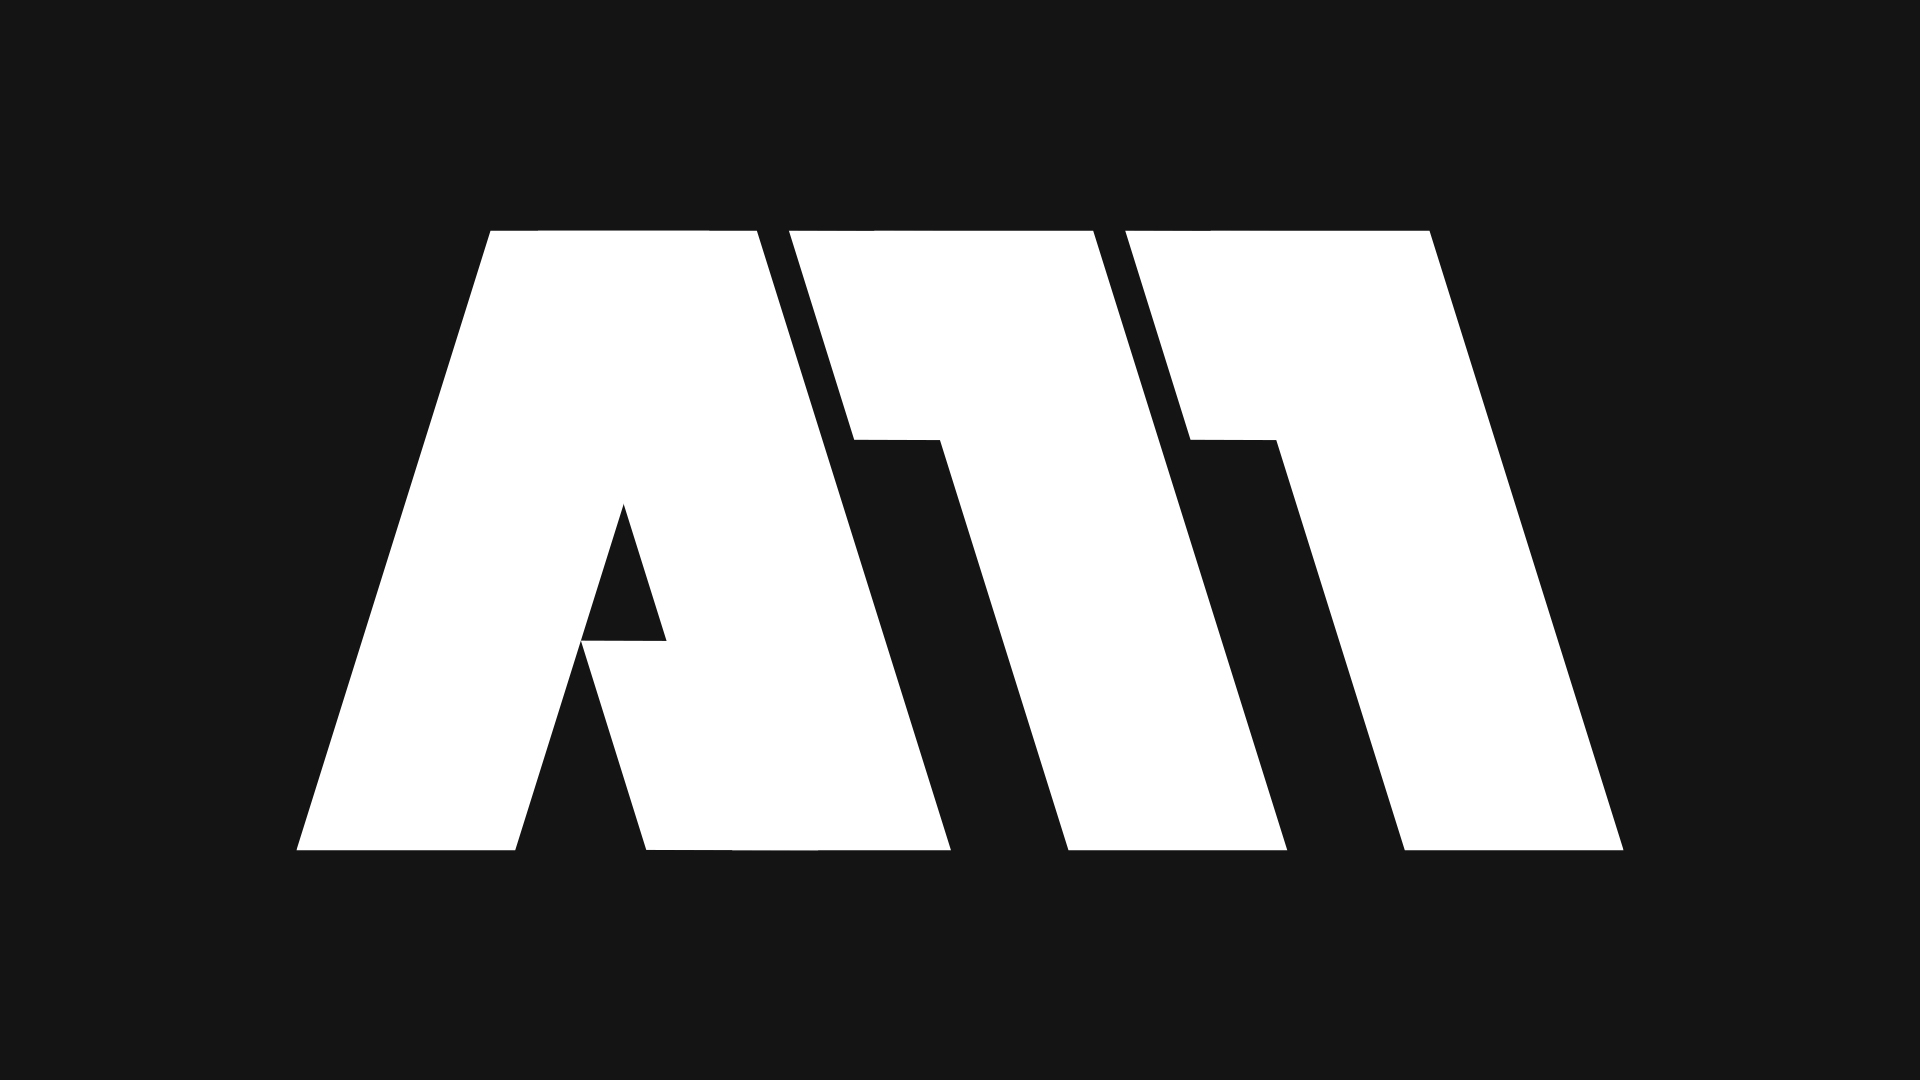 A11 Movie Studio Logo Design